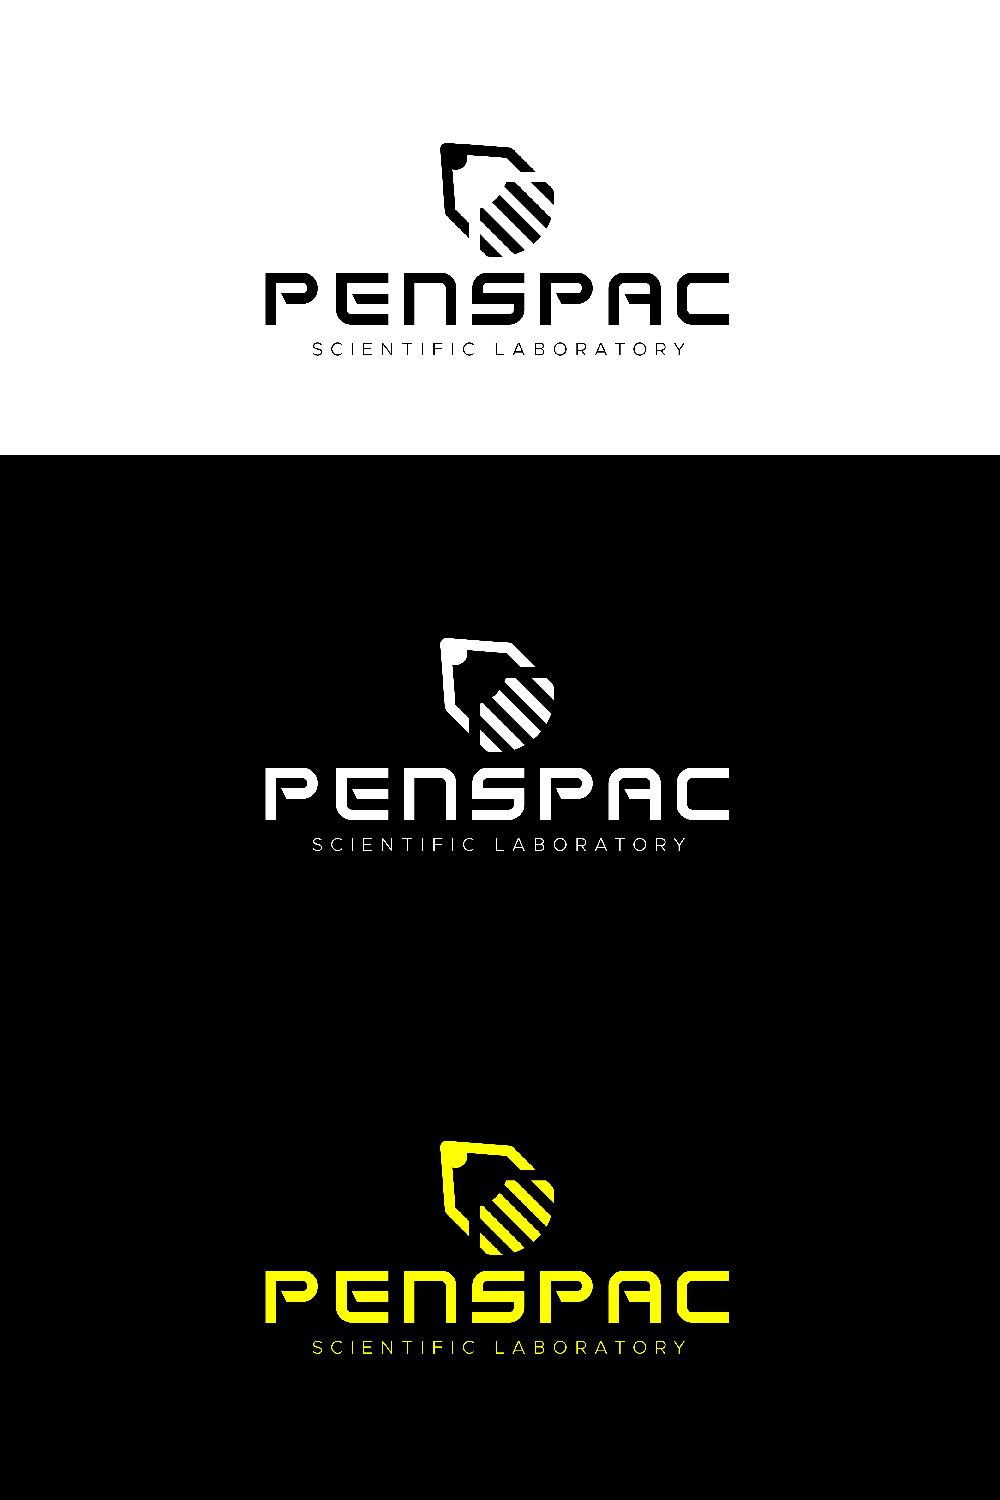 Spac logo/ pen logo/logo design pinterest preview image.